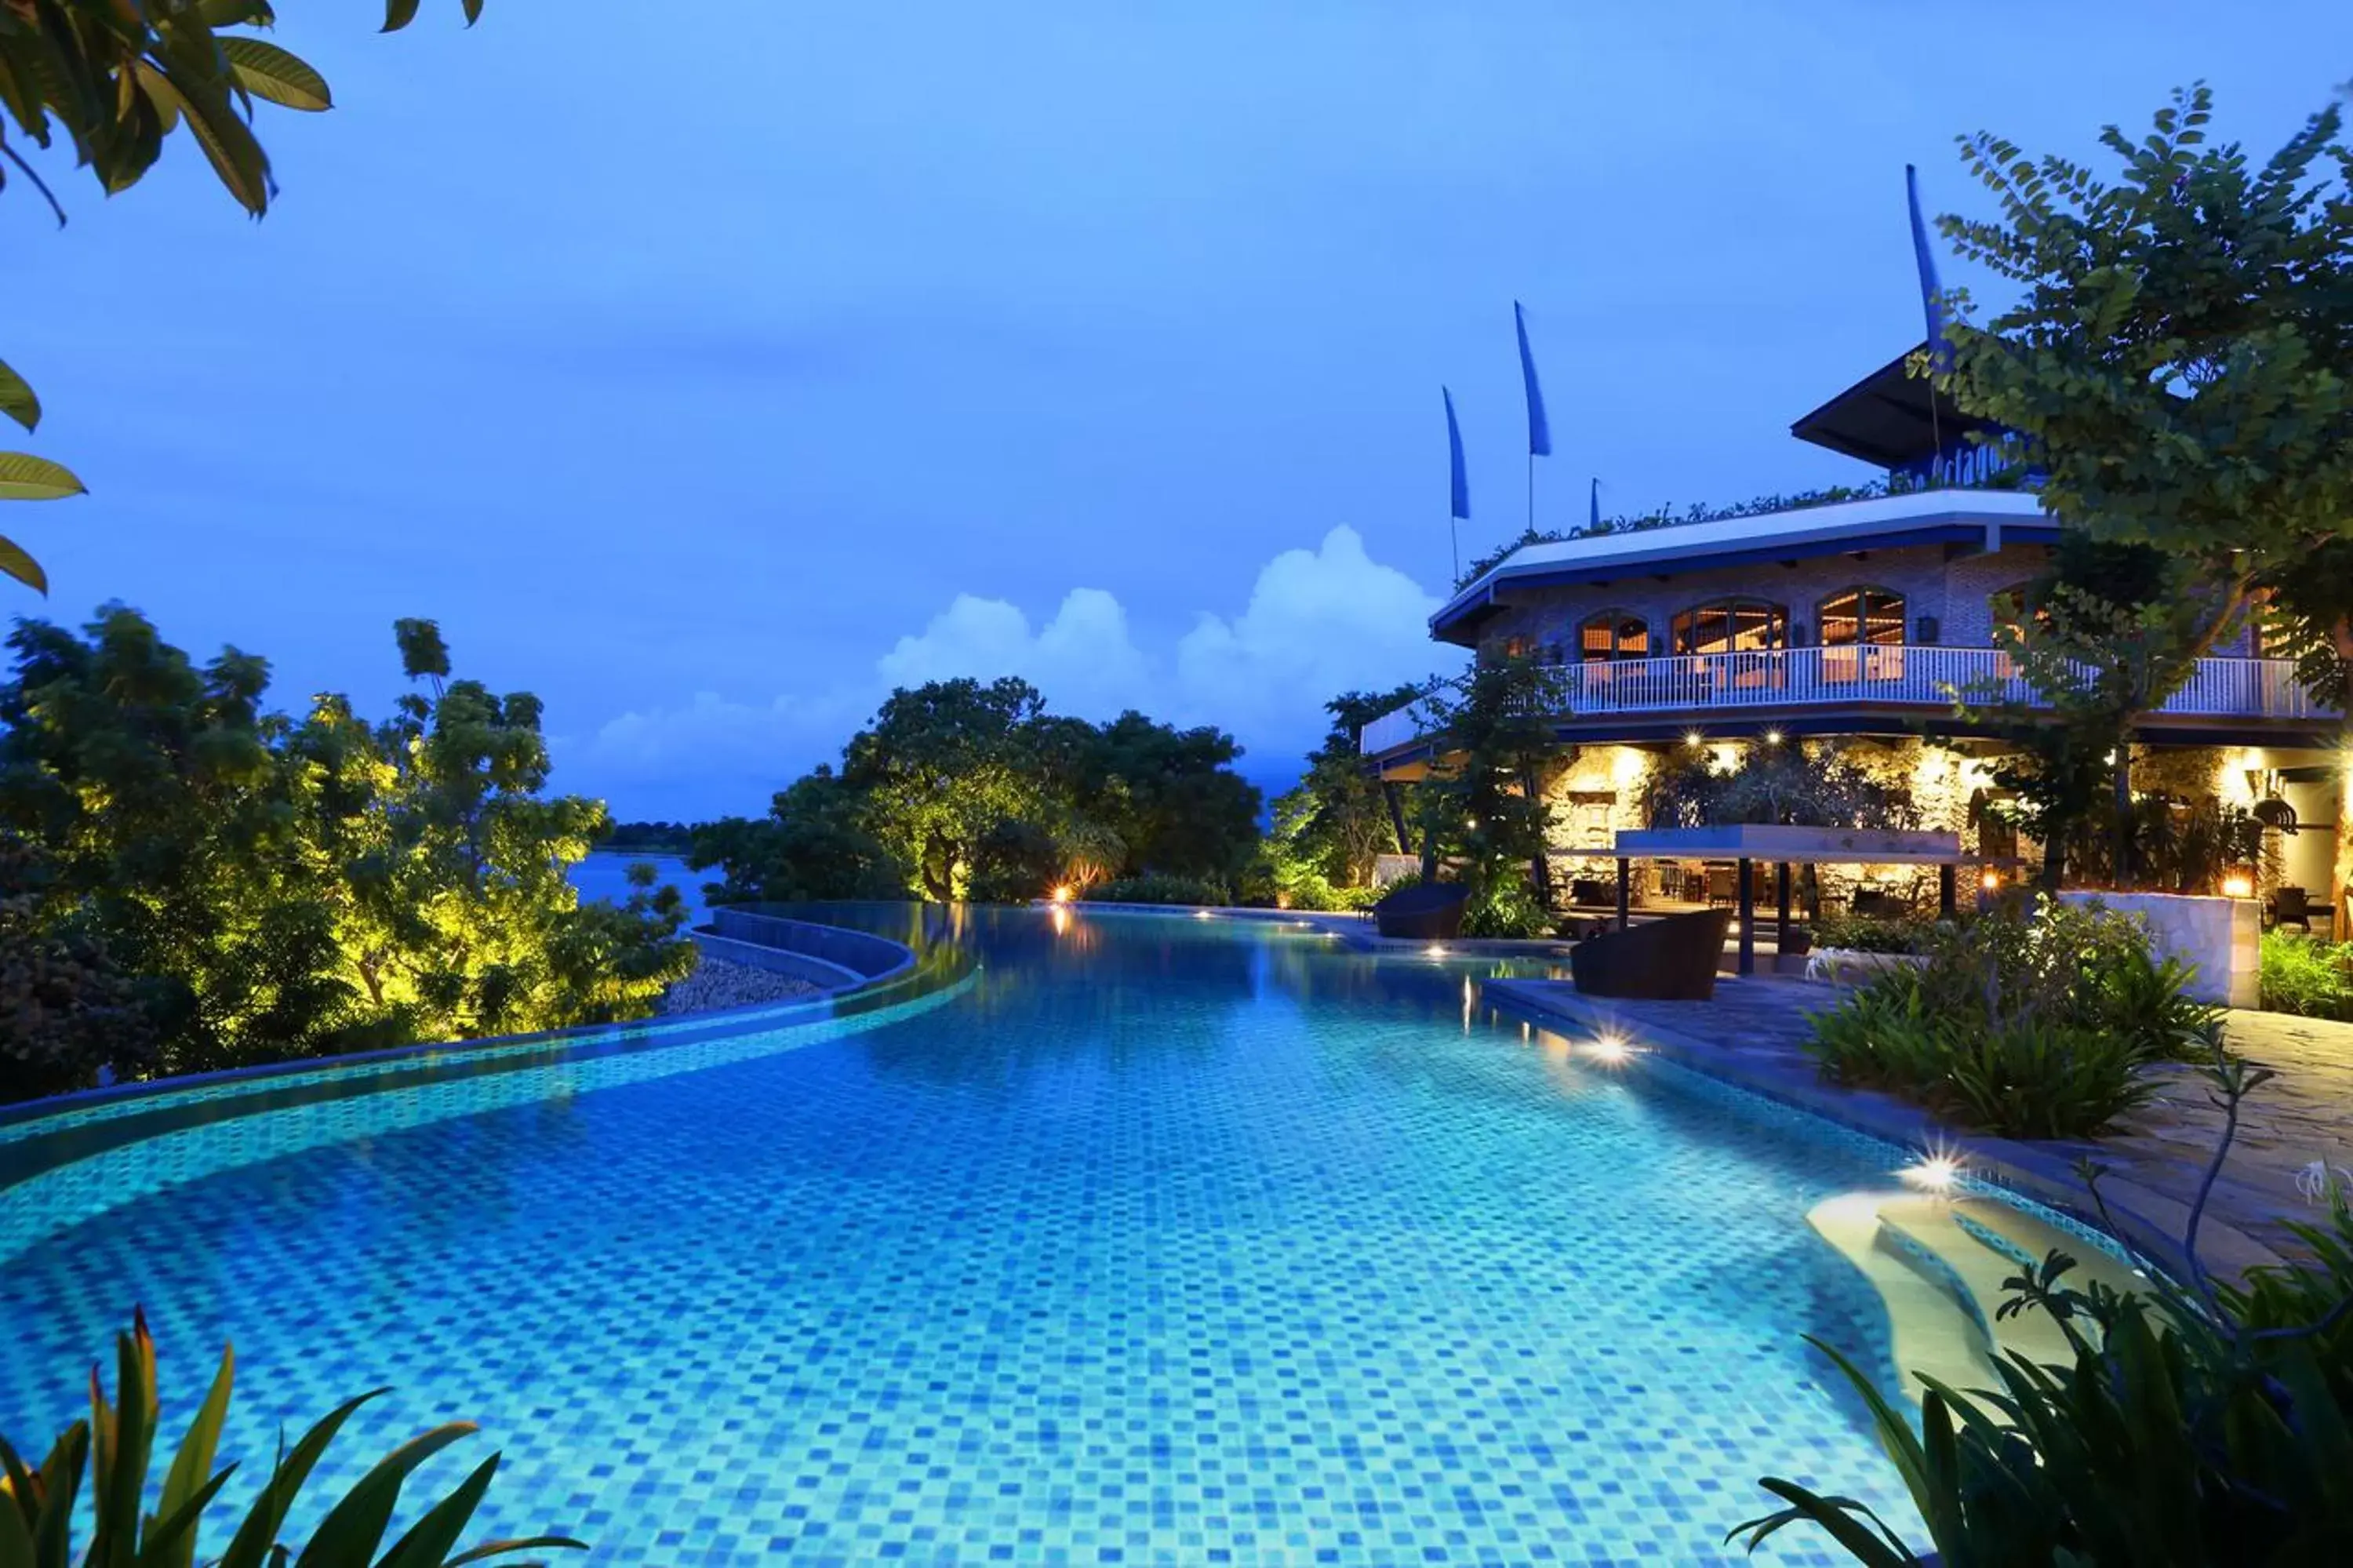 Swimming Pool in Plataran Menjangan Resort and Spa - CHSE Certified